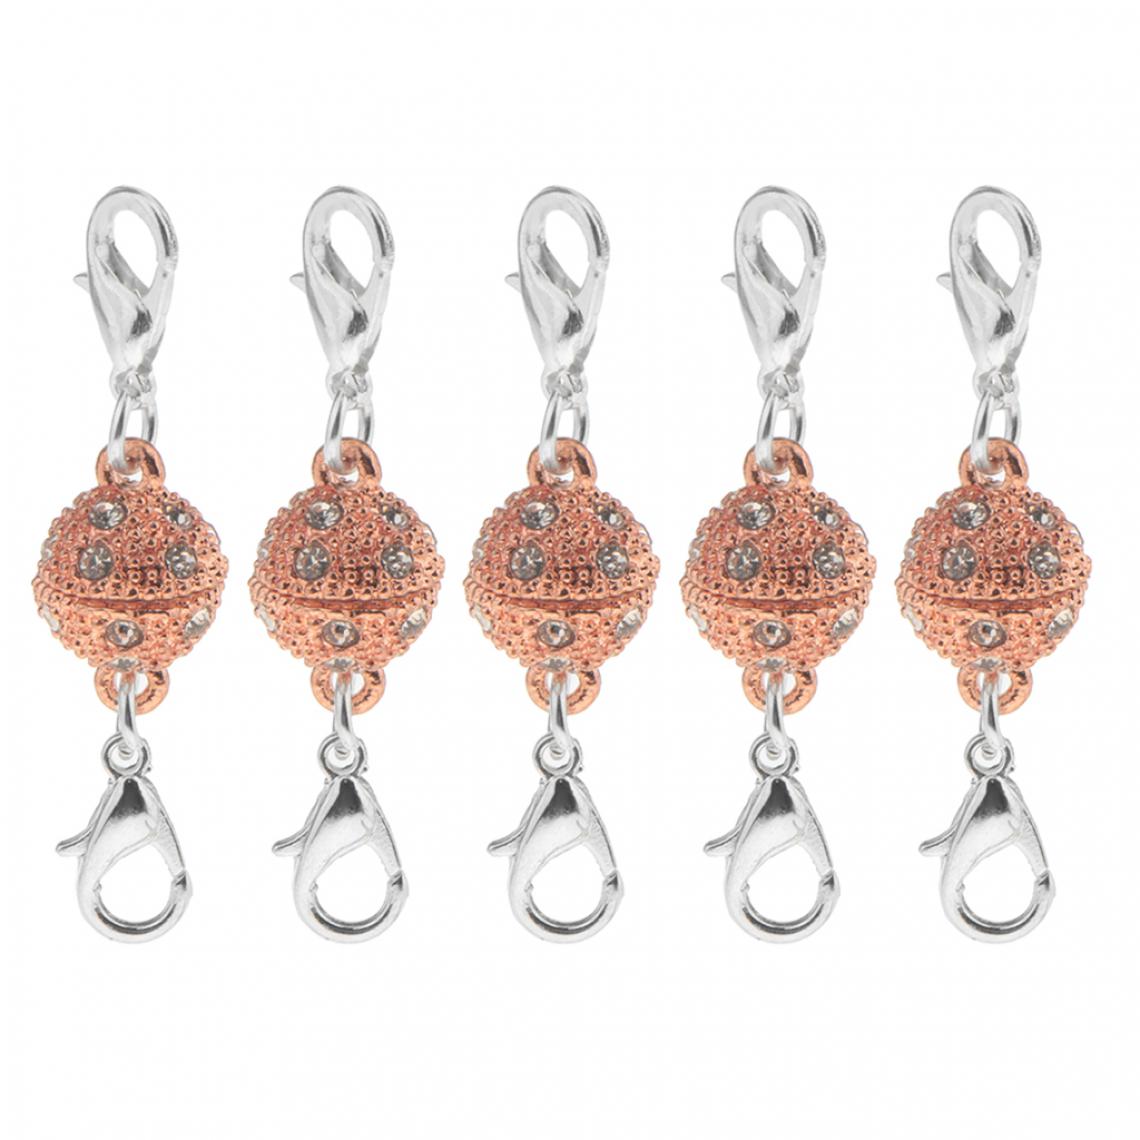 marque generique - 5pcs balle strass homard magnétique fermoirs bijoux bricolage conclusions argent - Perles